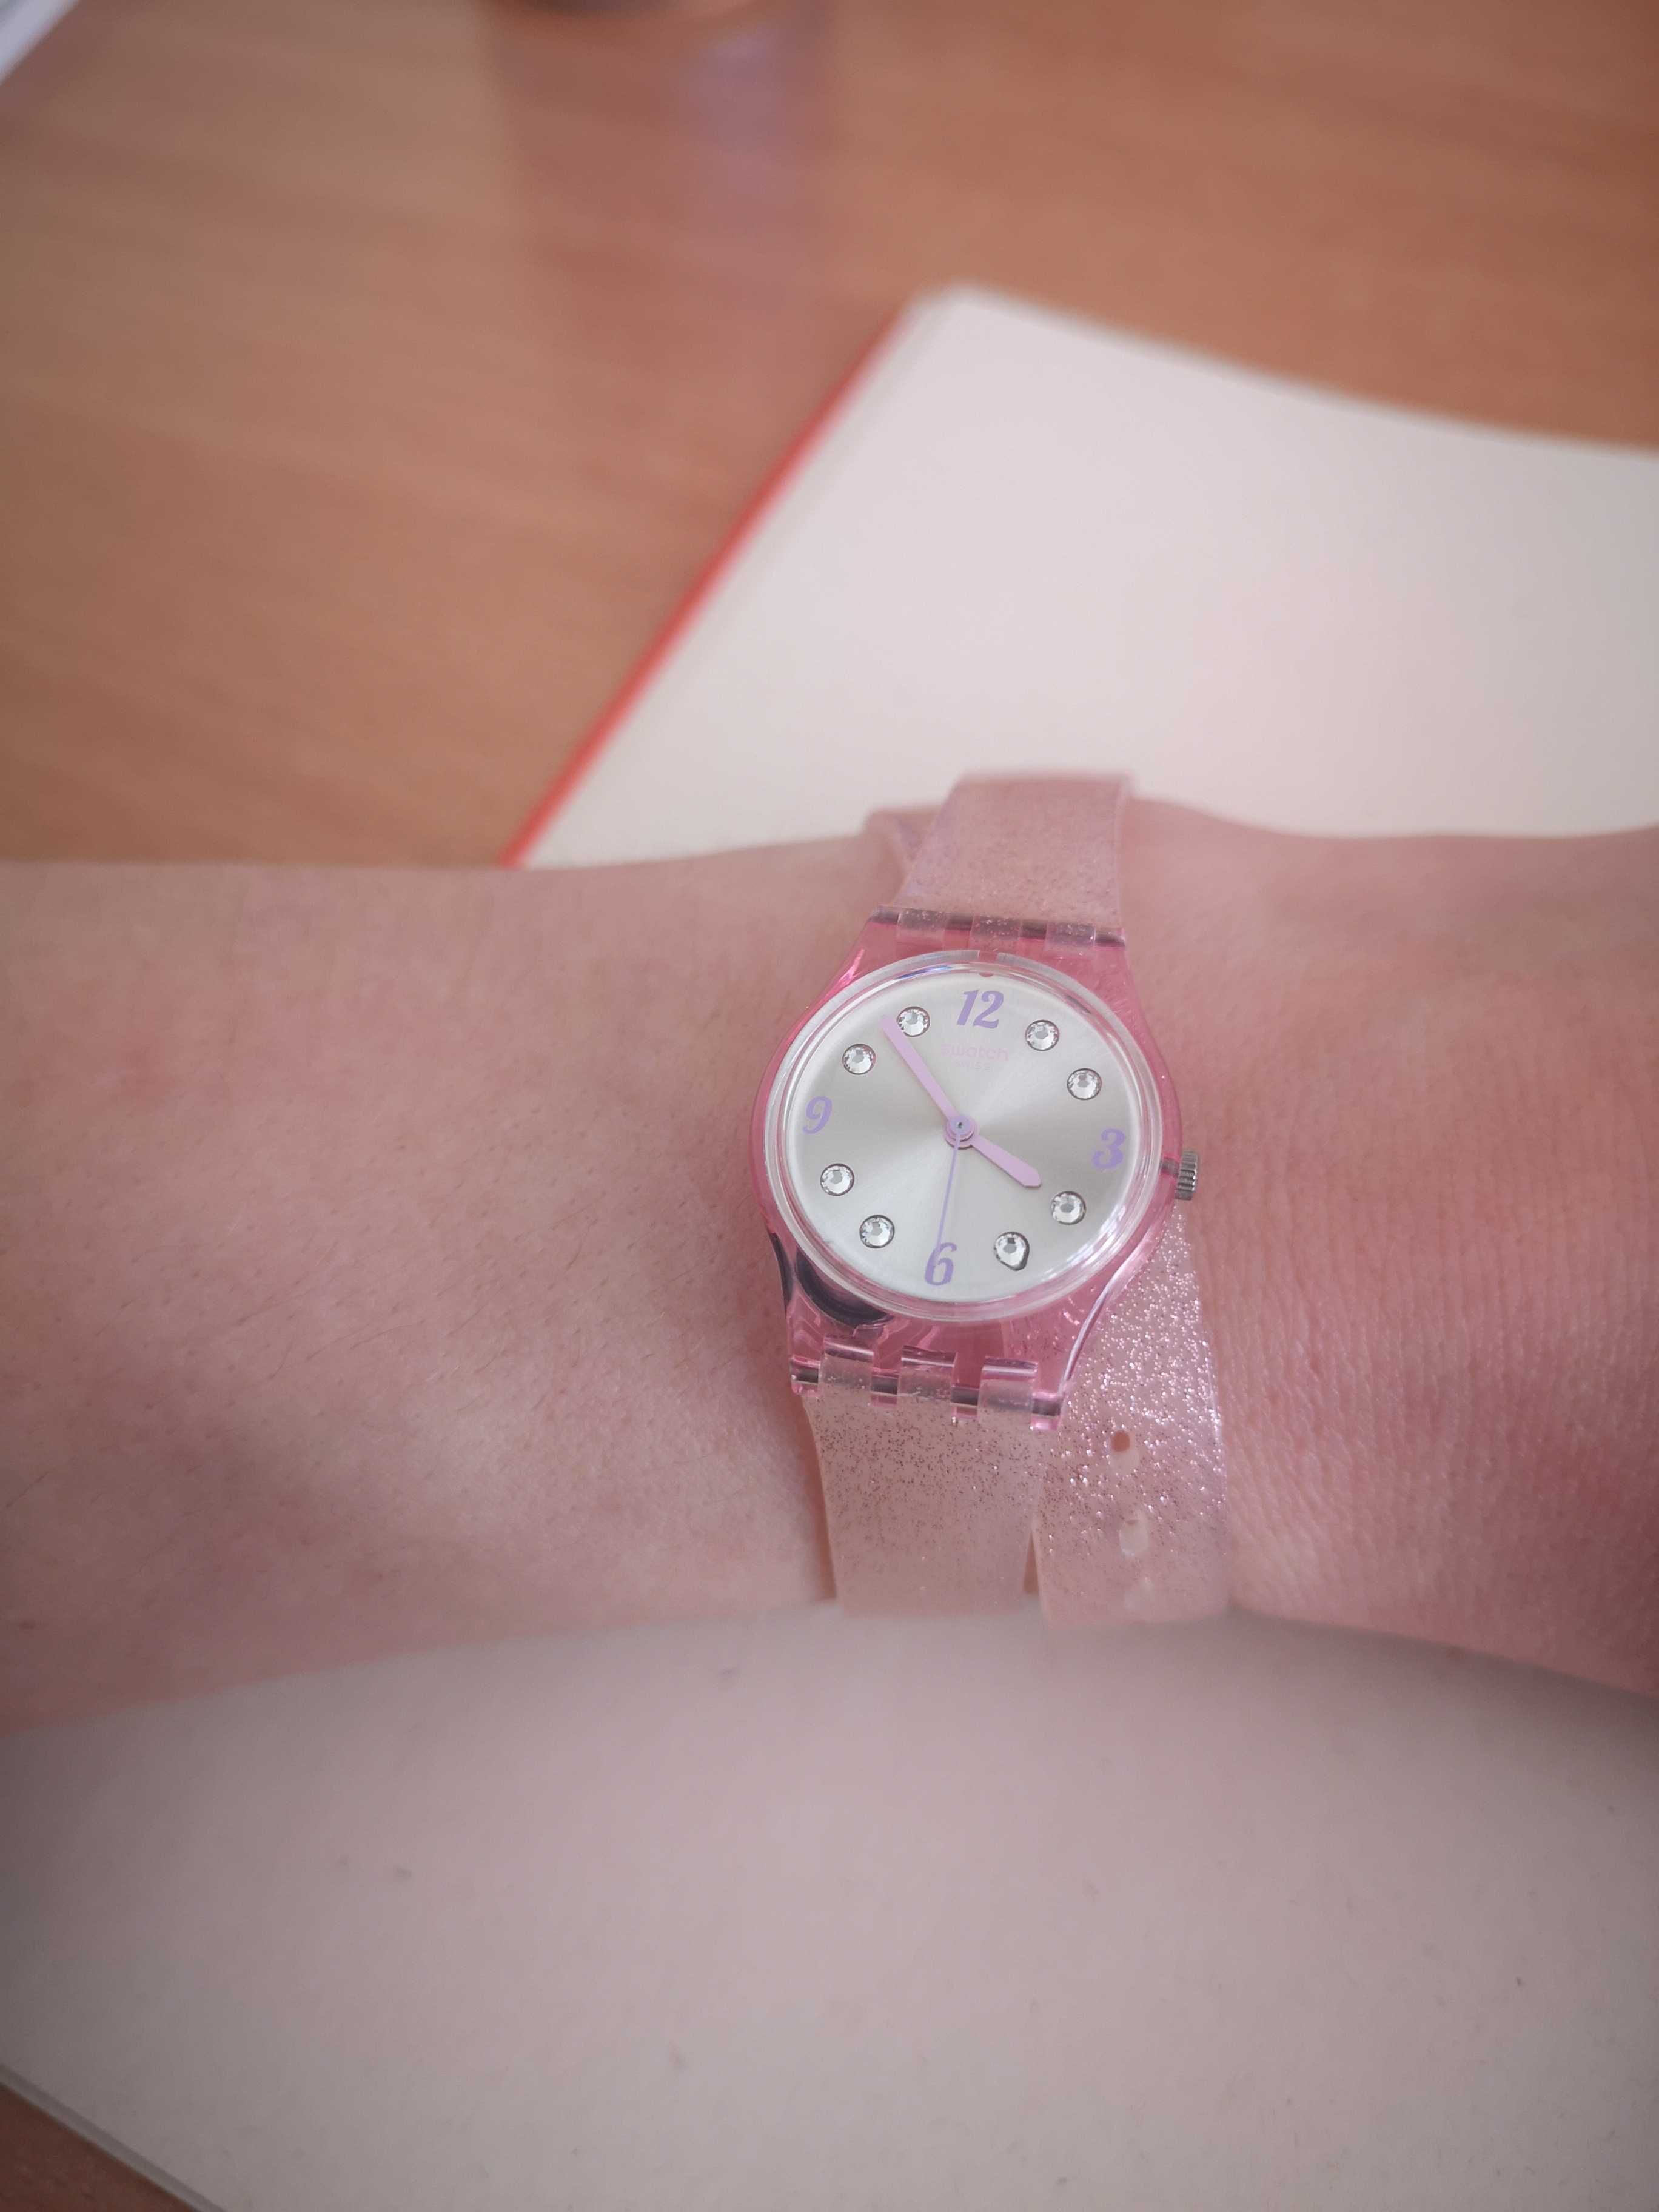 Zegarek swatch lady podwójny pasek silikonowy różowy brokat